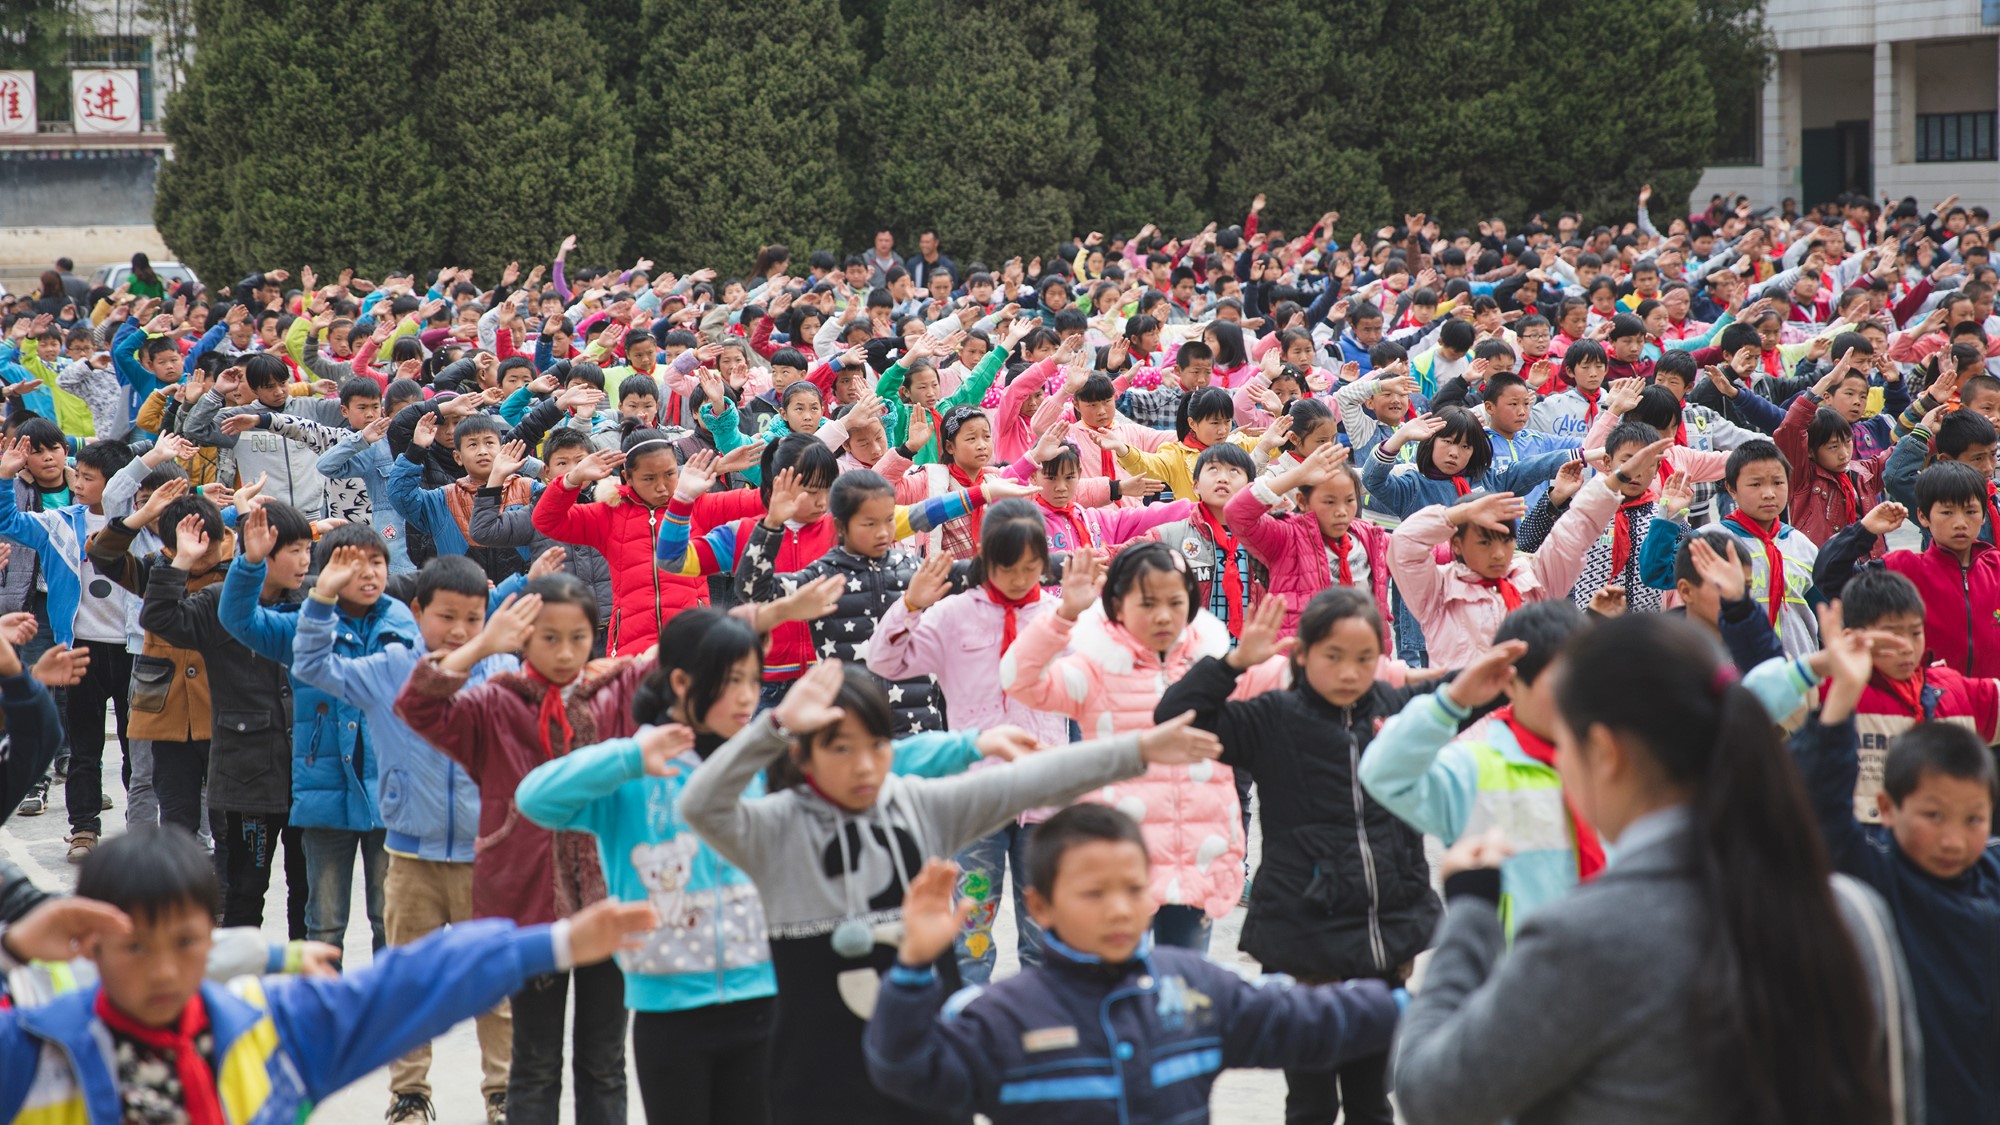 Hundrevis av skolebarn gjør synkrone bevegelser på skoleplassen